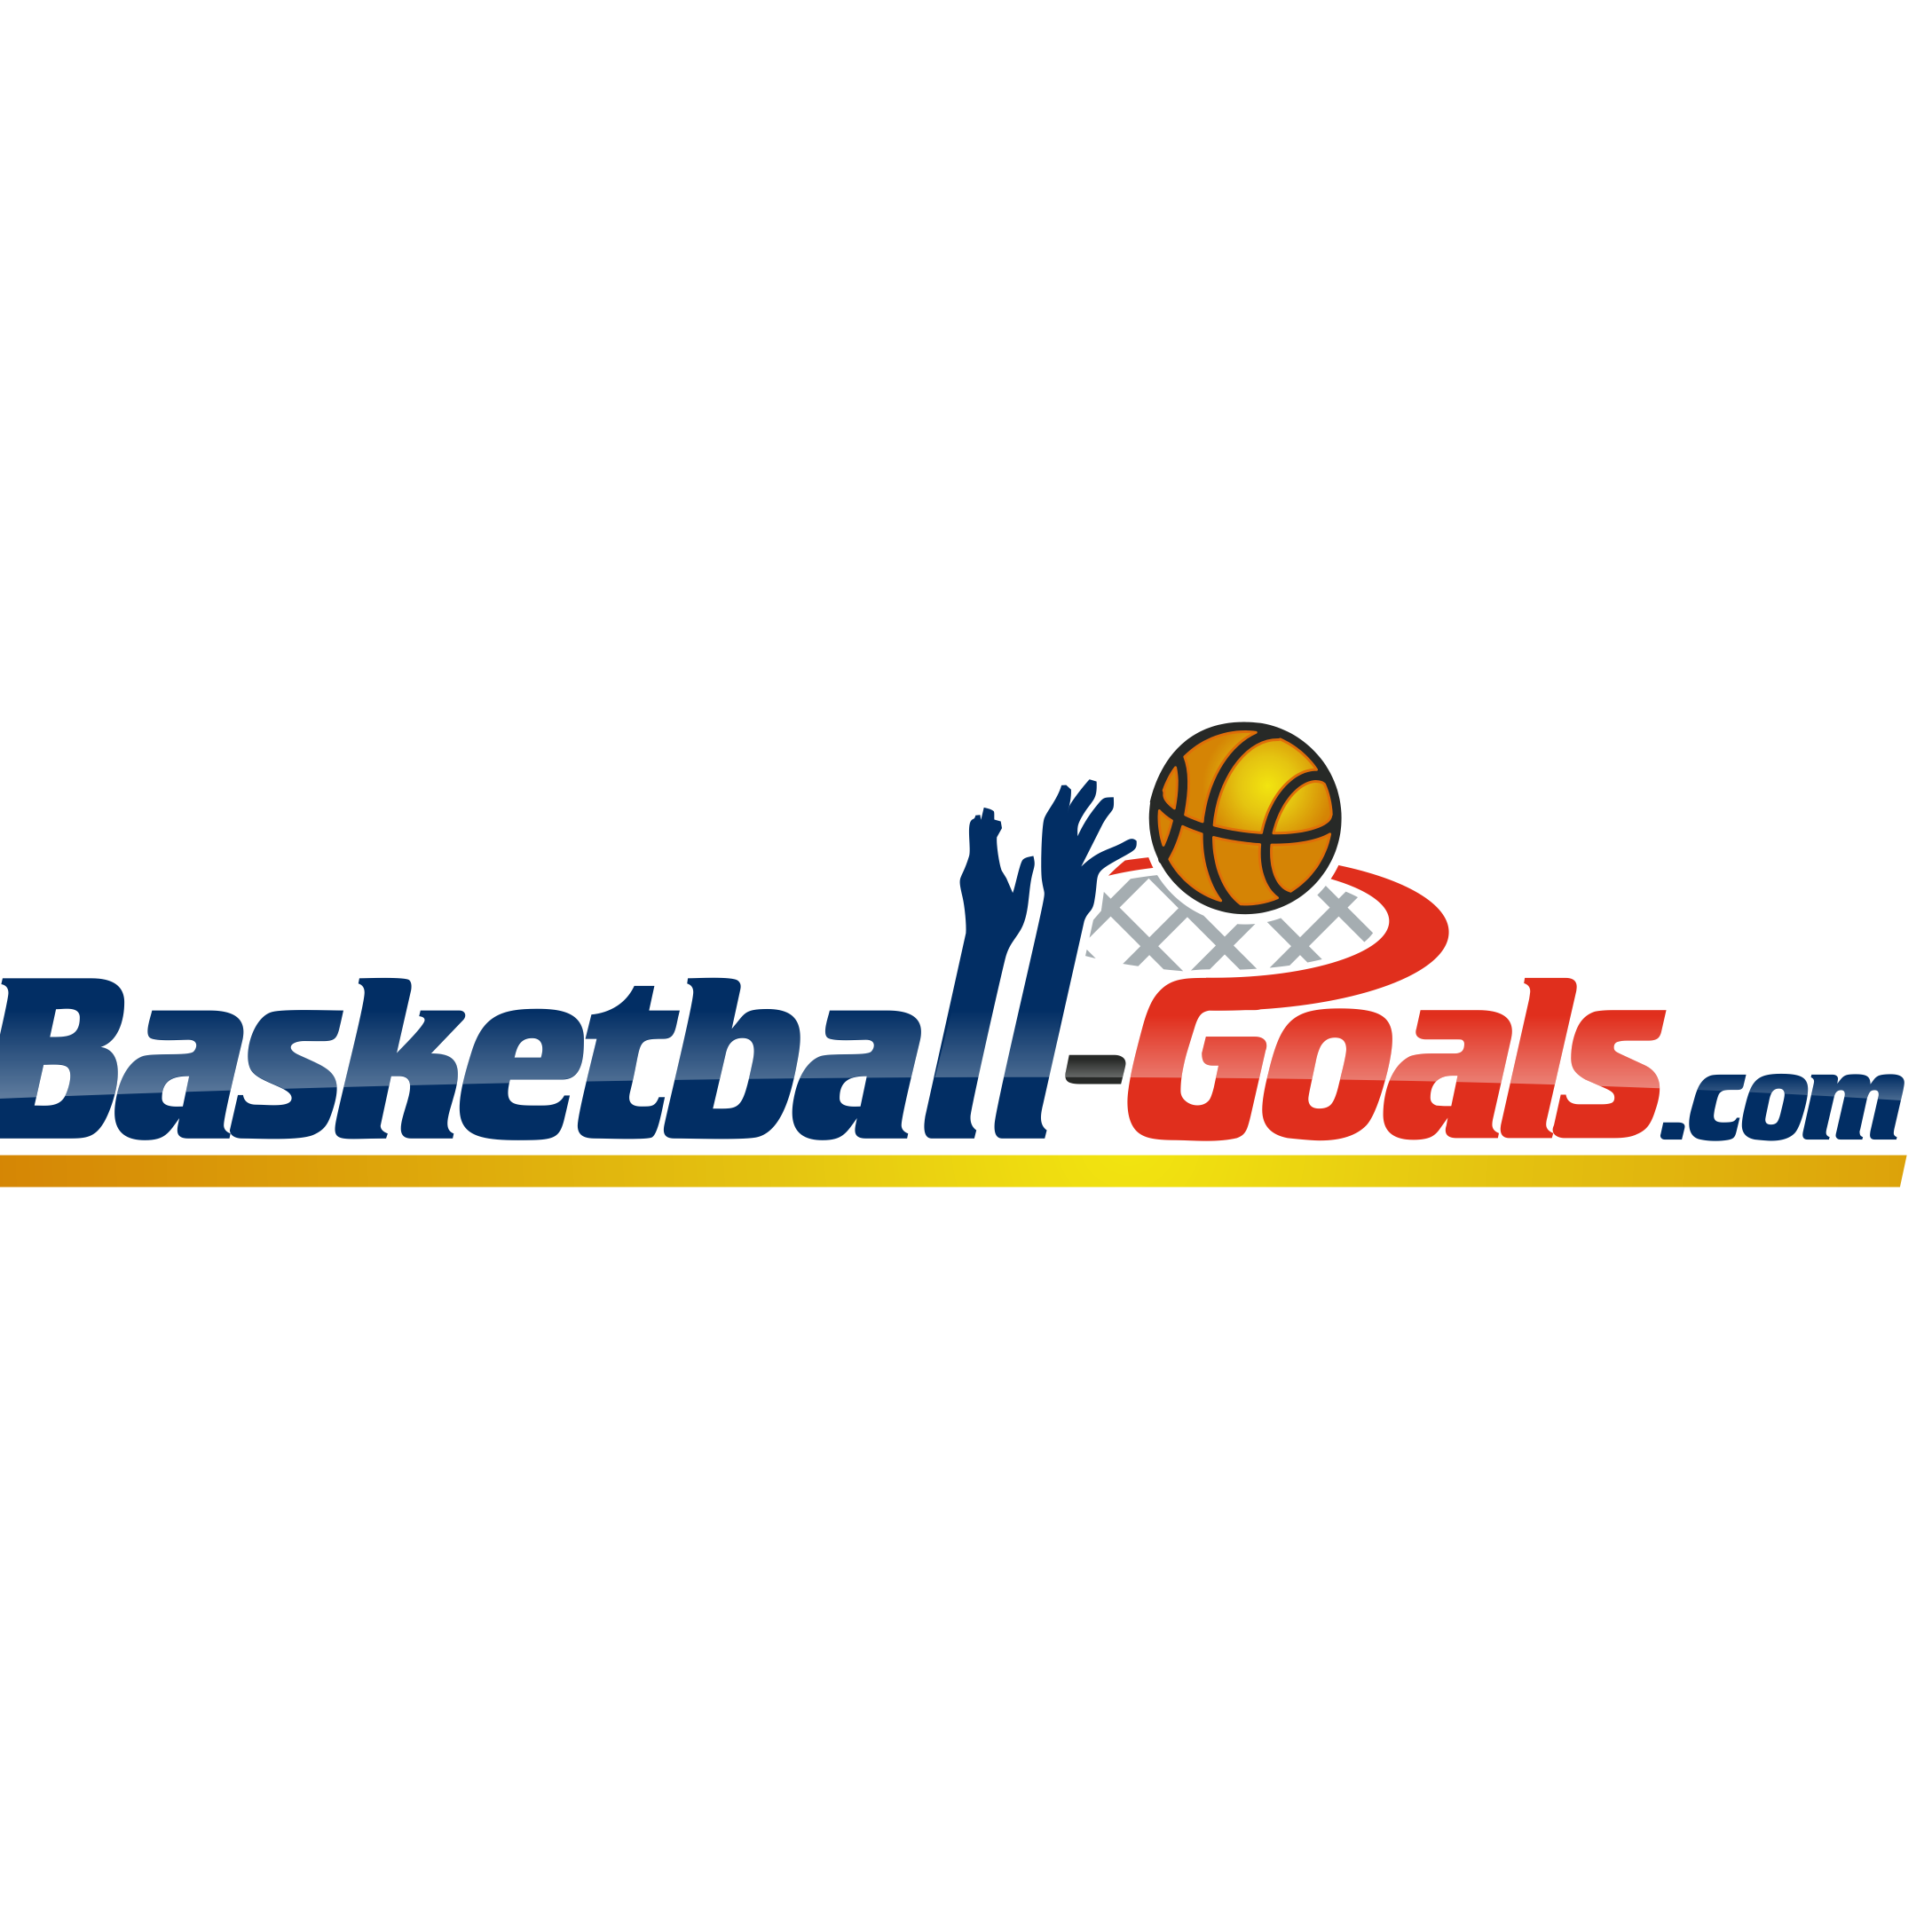 Basketball-goals.com Logo